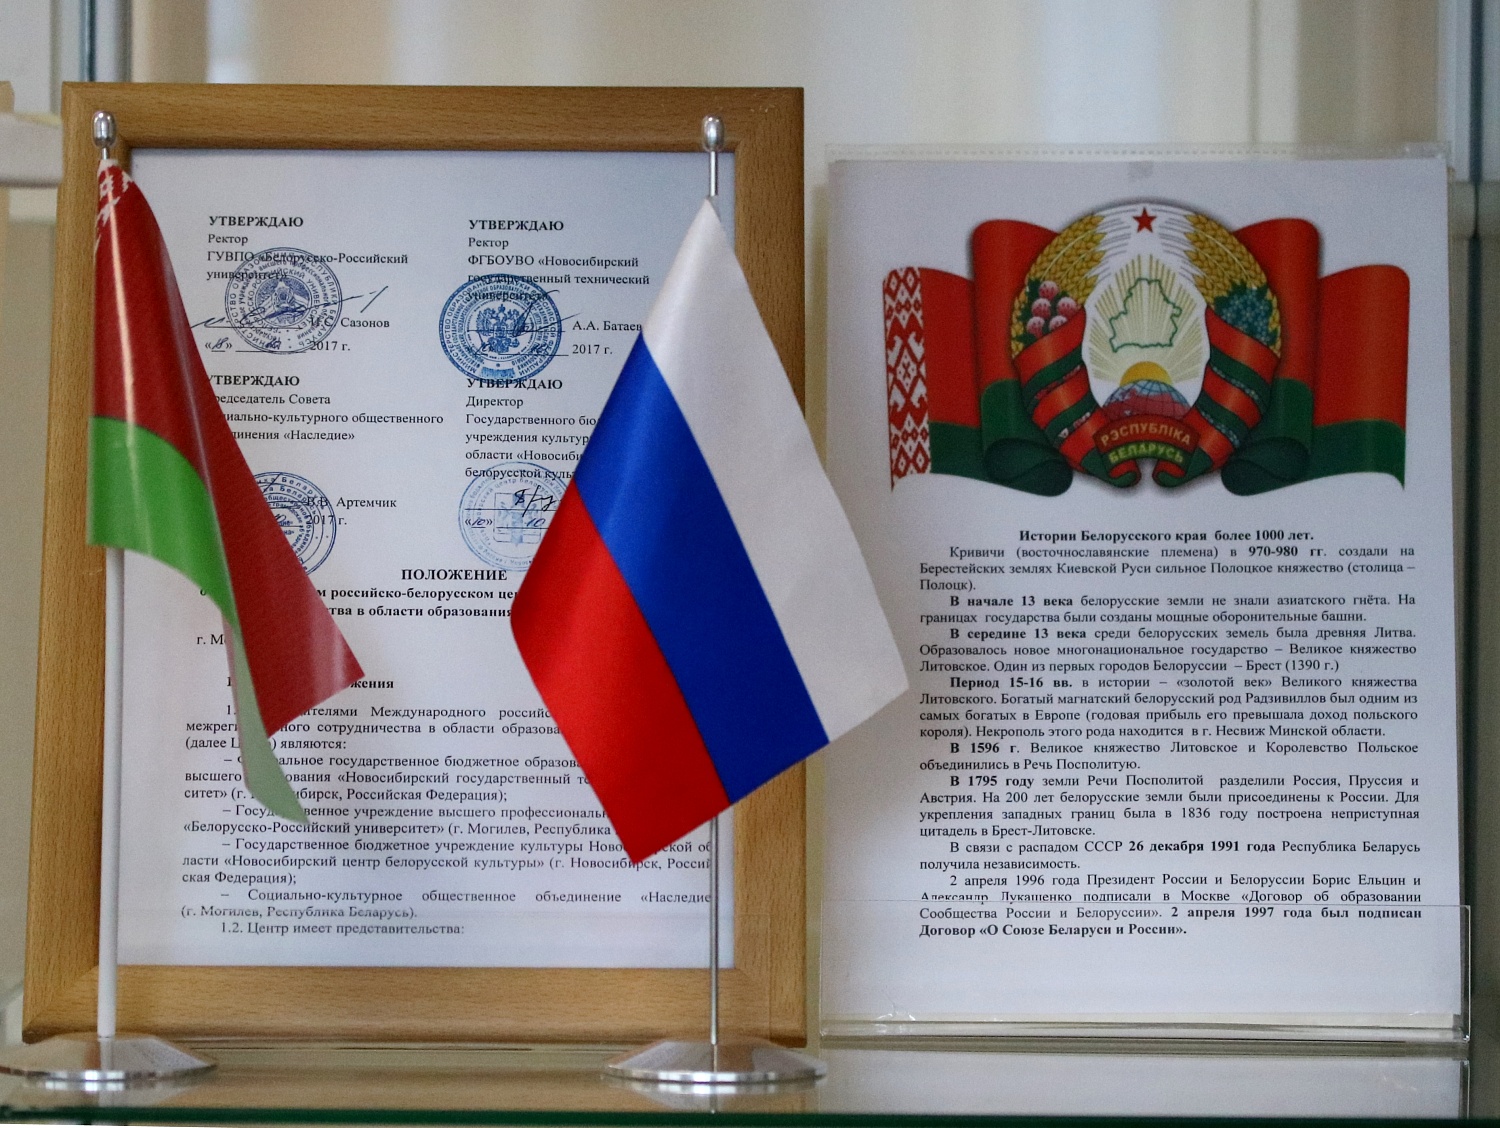 Международный российско-белорусский центр межрегионального сотрудничества в области образования, науки и культуры